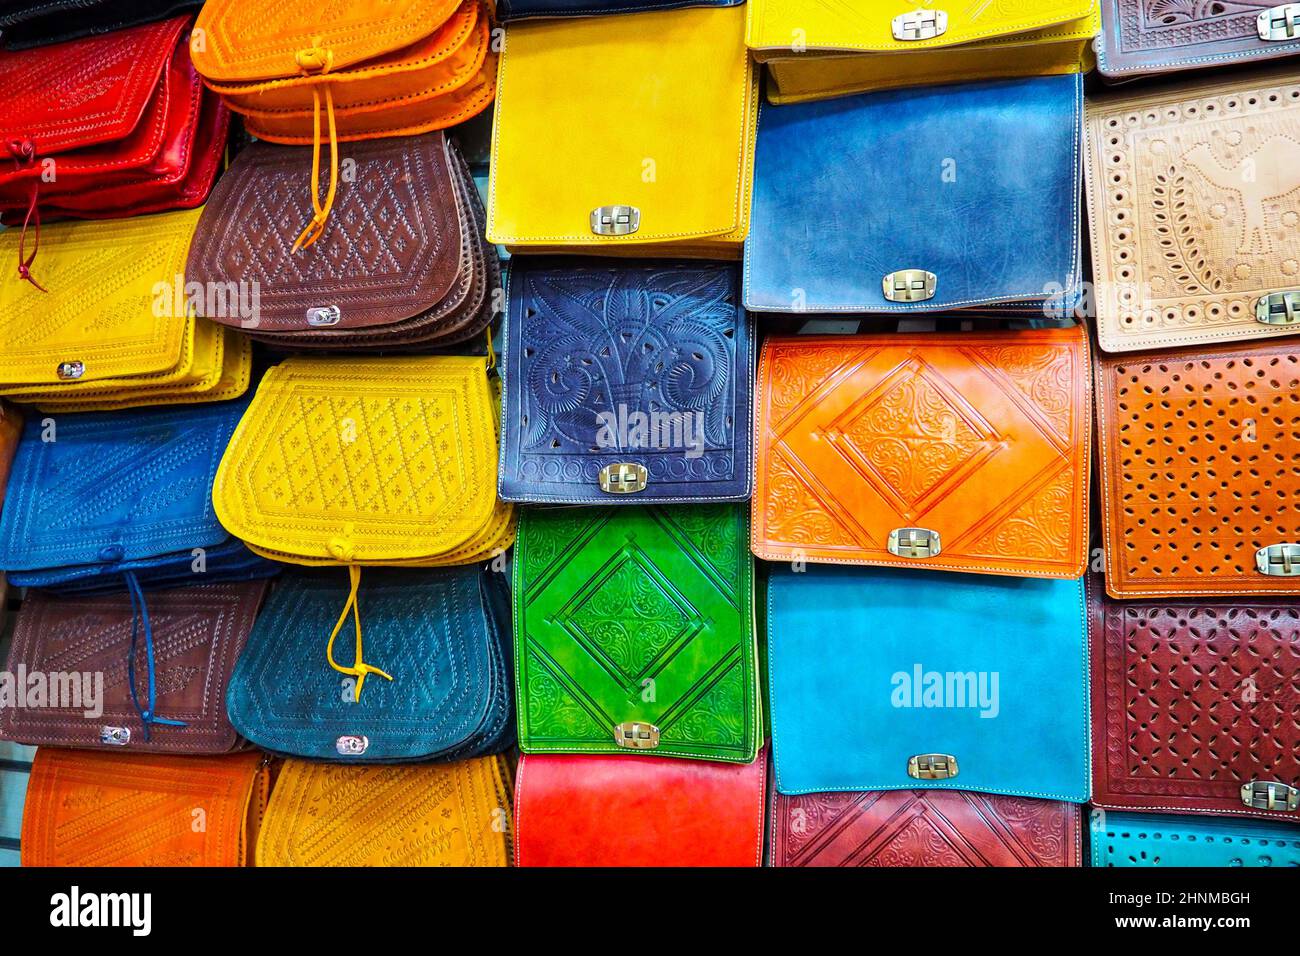 Molte borse colorate in pelle esposte al souk - tradizionale mercato di strada in Marocco, primo piano dettaglio Foto Stock